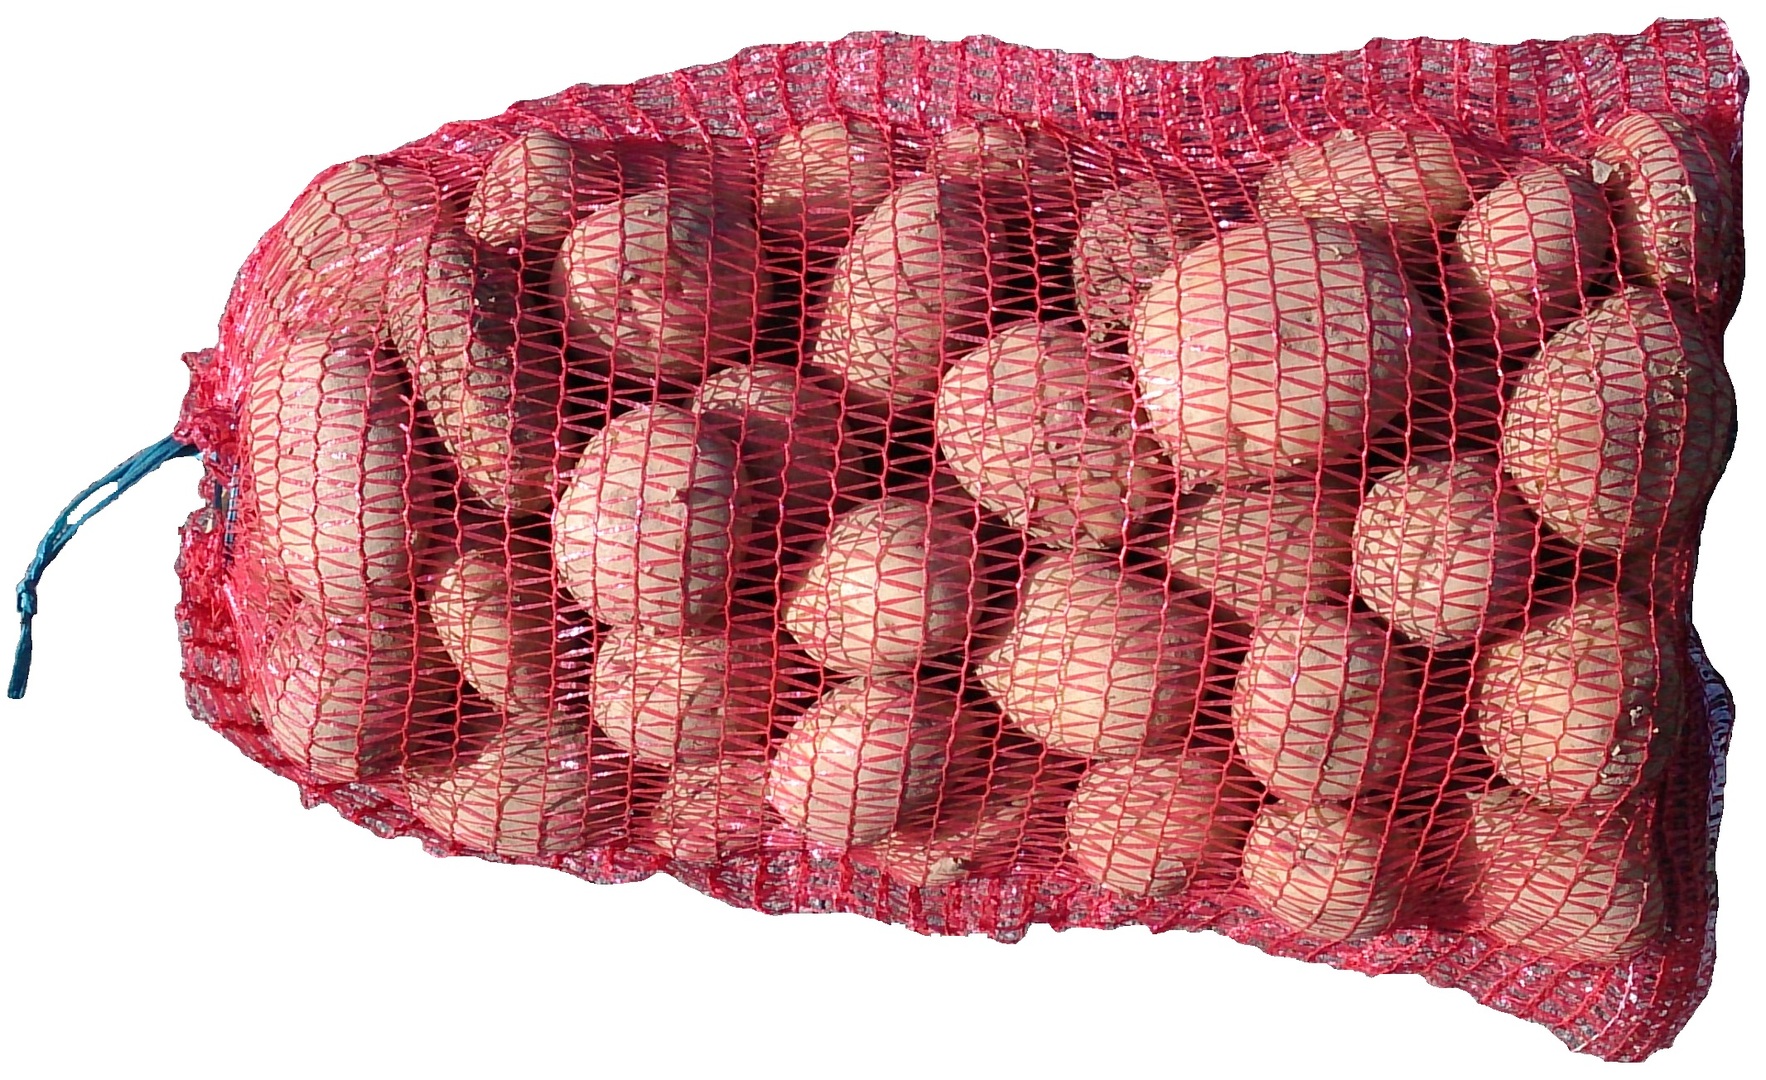 Овощные сетки мешки для картофеля